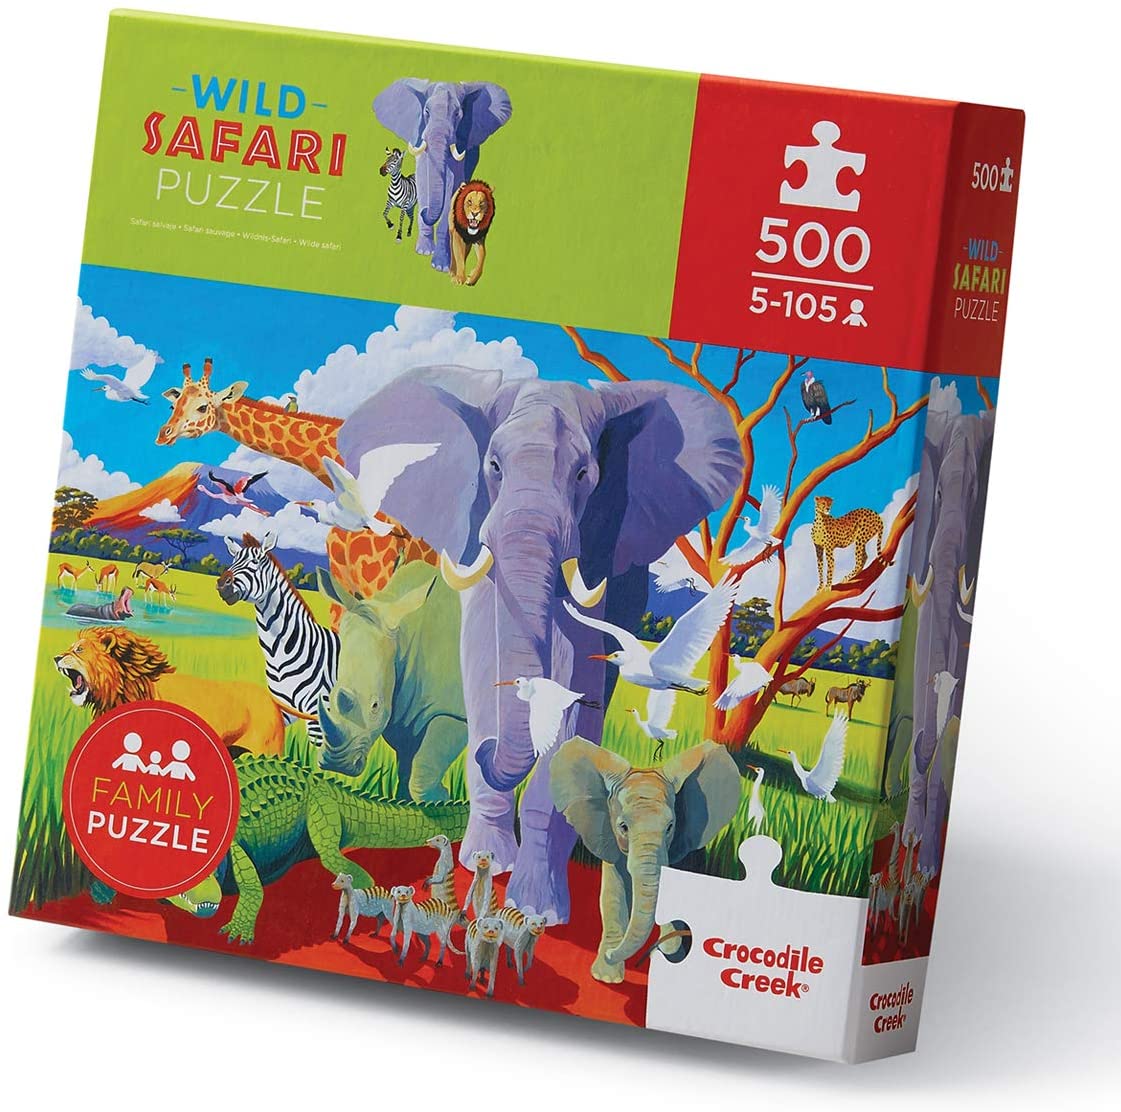 Wild Safari Puzzle - 500 pieces